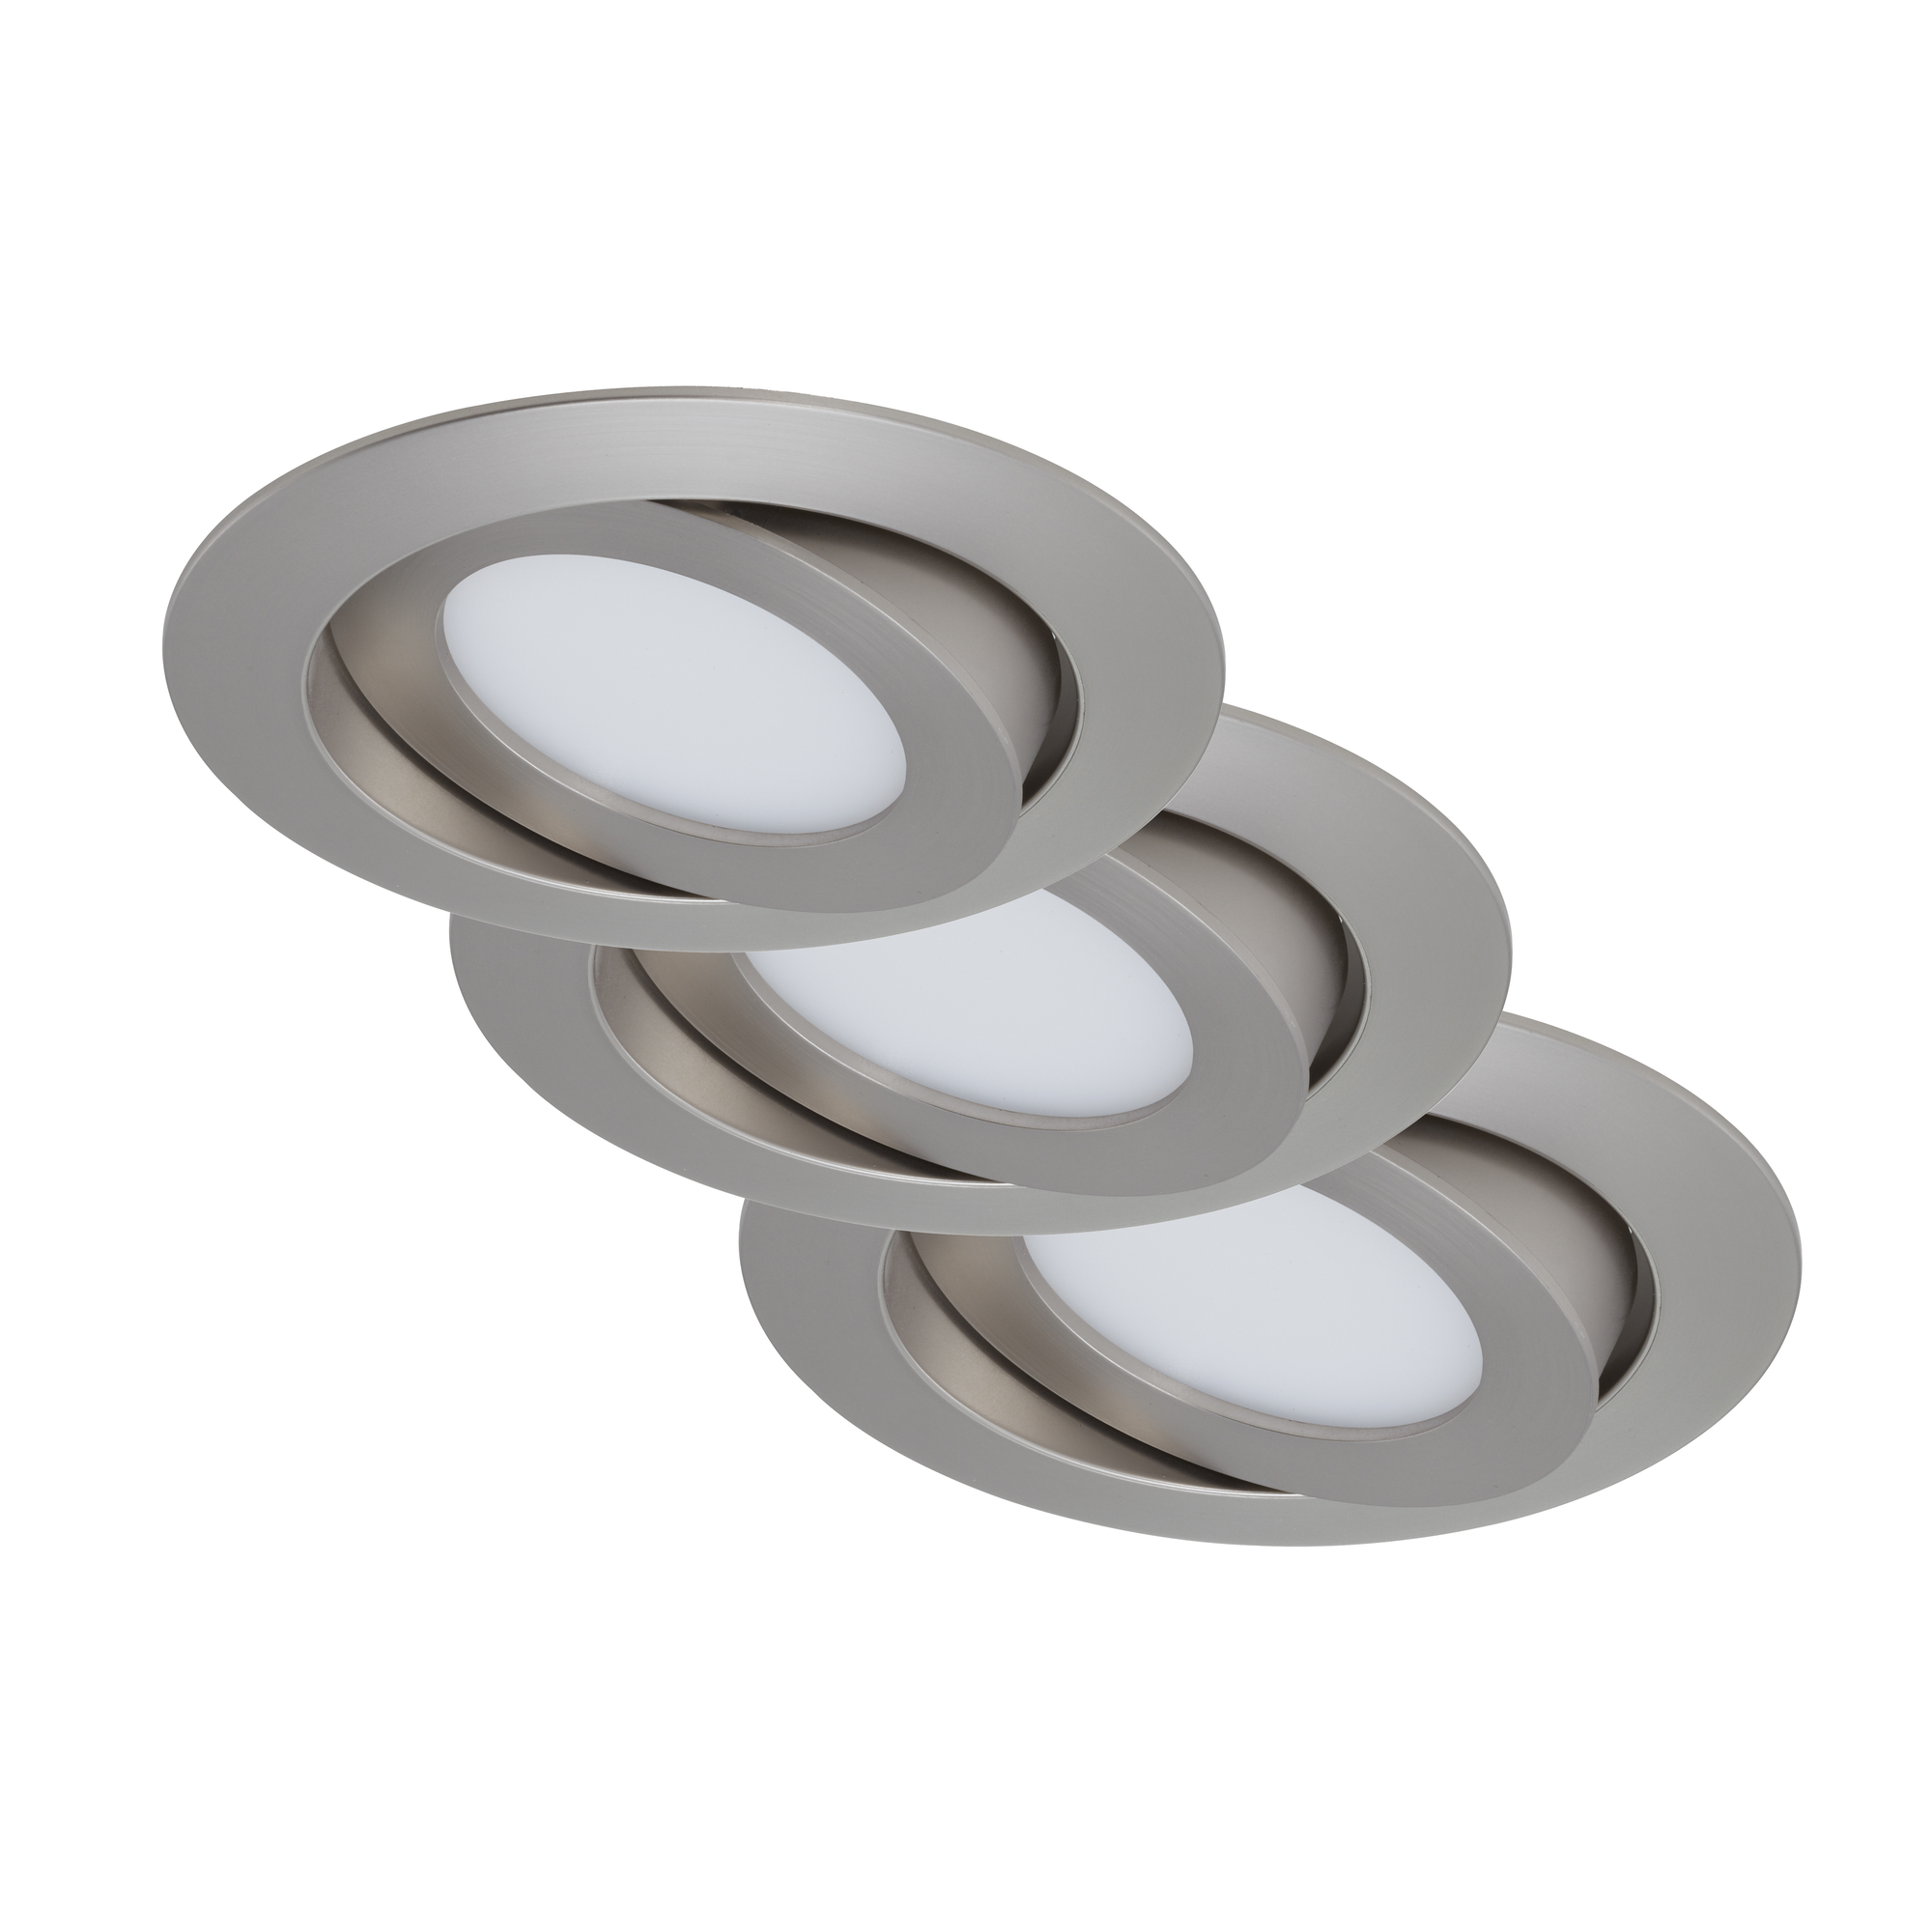 LED-Einbauleuchte 'Flat' matt-nickel 6 W, 3er-Set + product picture